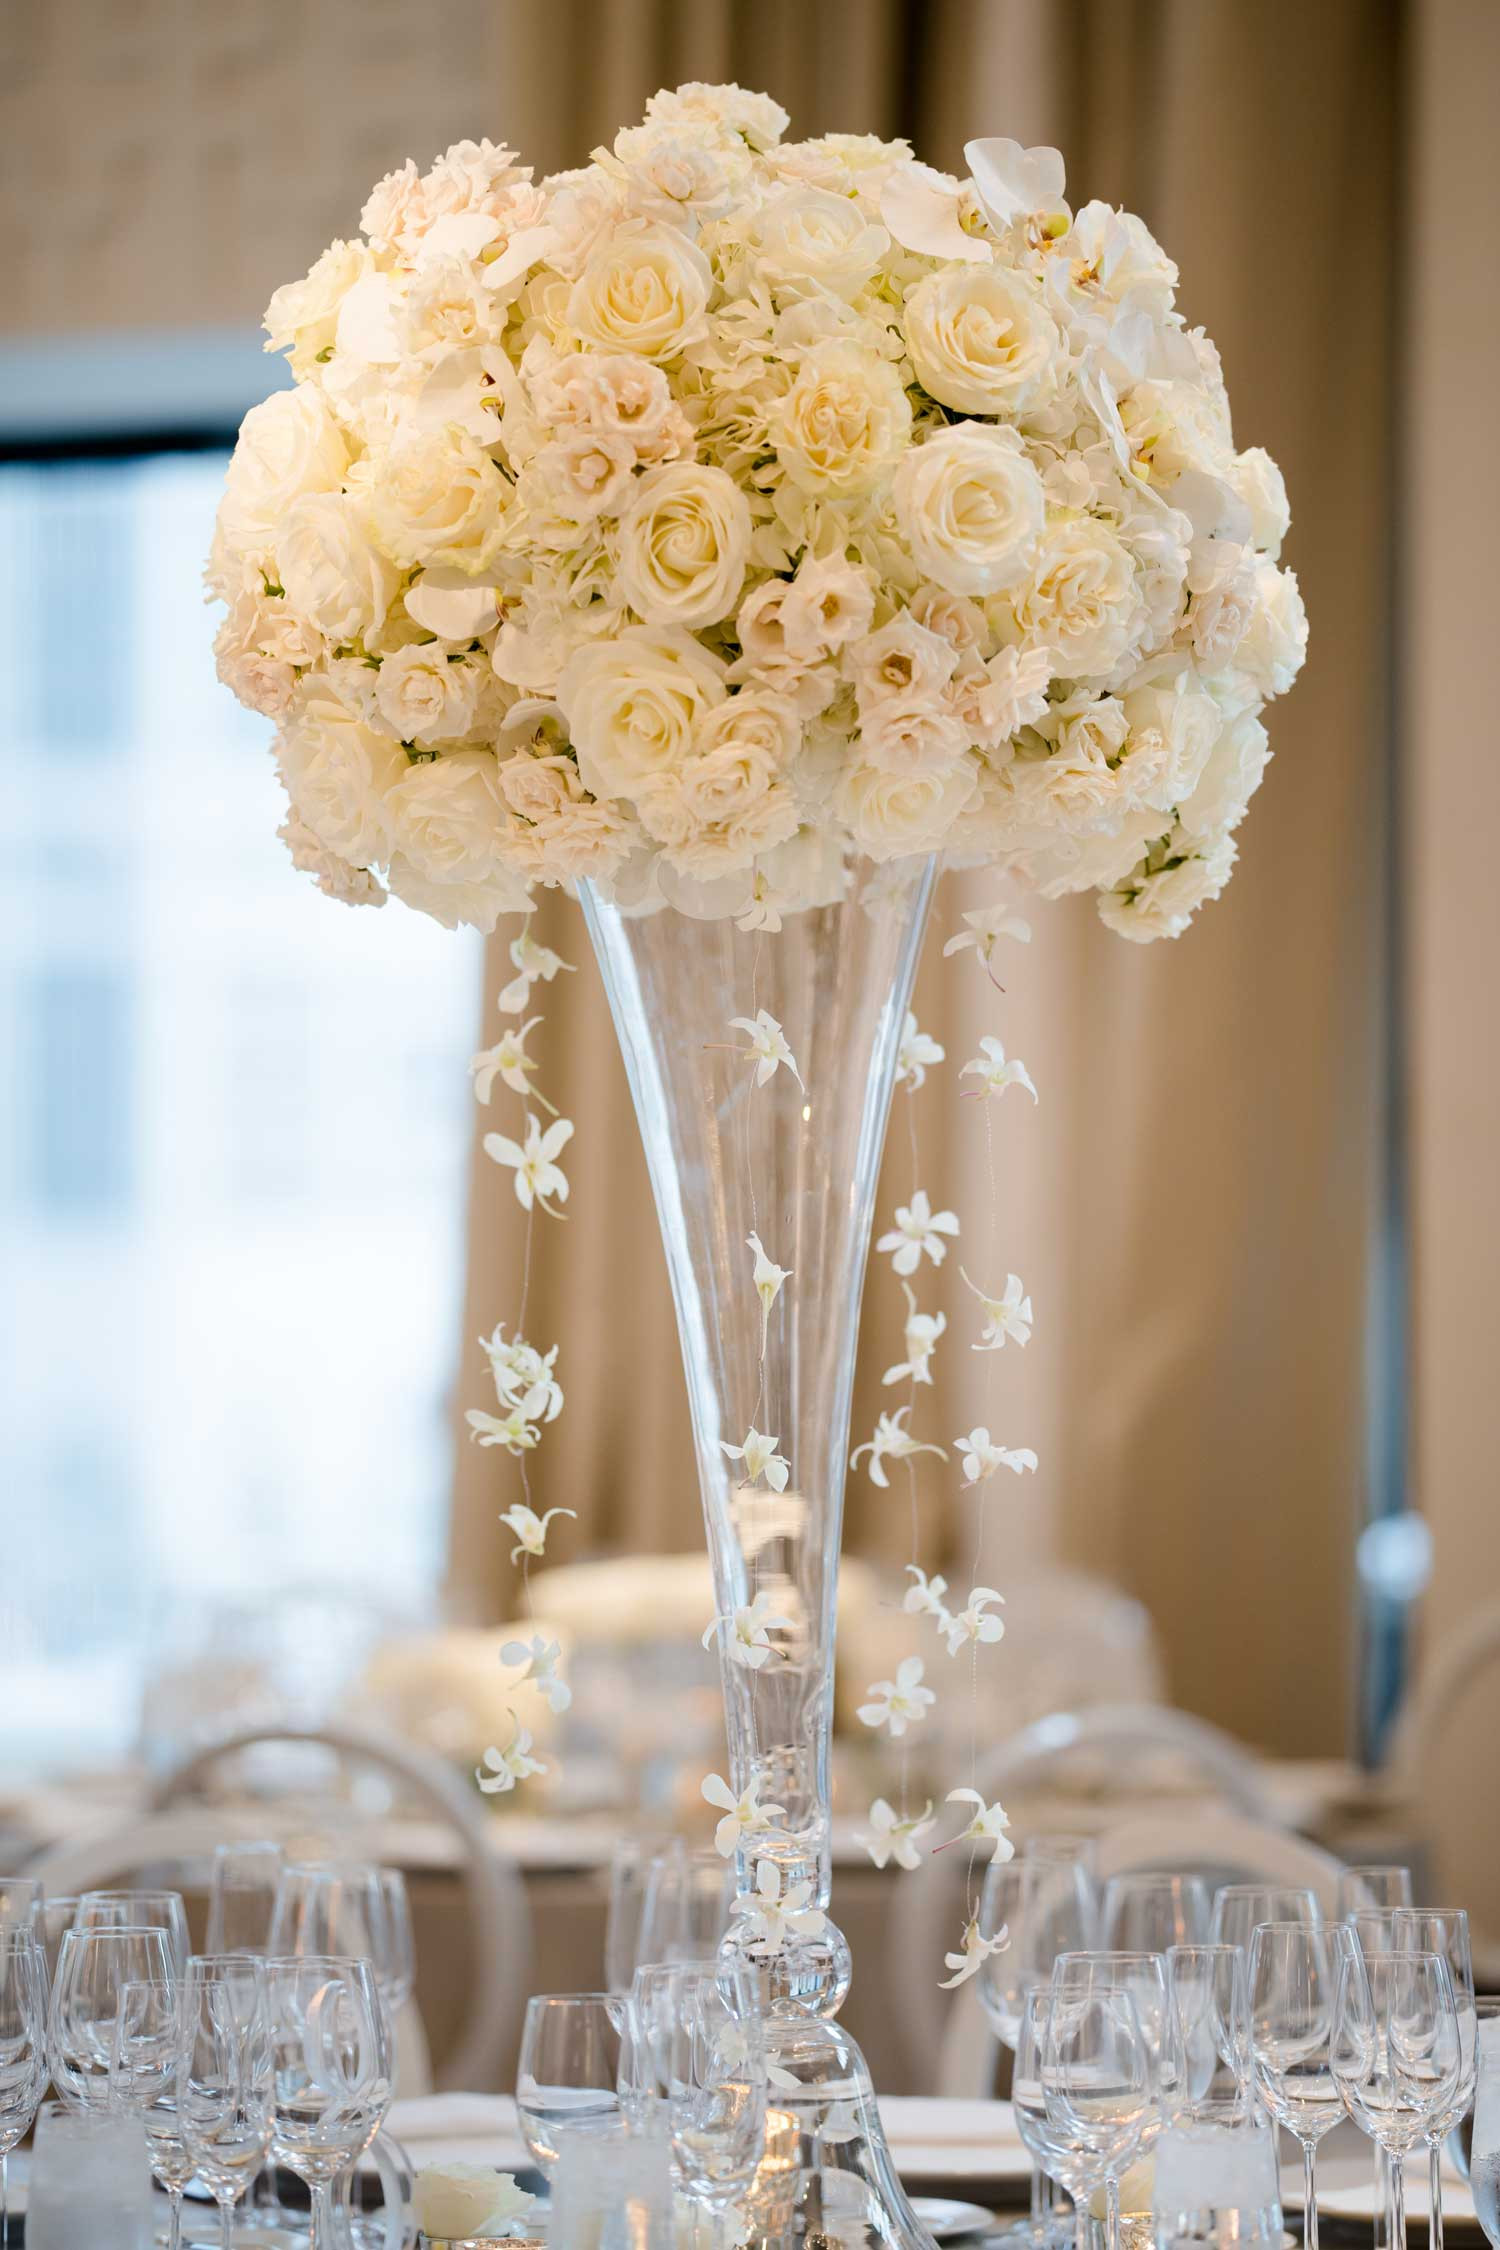 Flower Arrangement Ideas For Engagement Party
 Tall Flower Arrangement Ideas for Wedding Reception